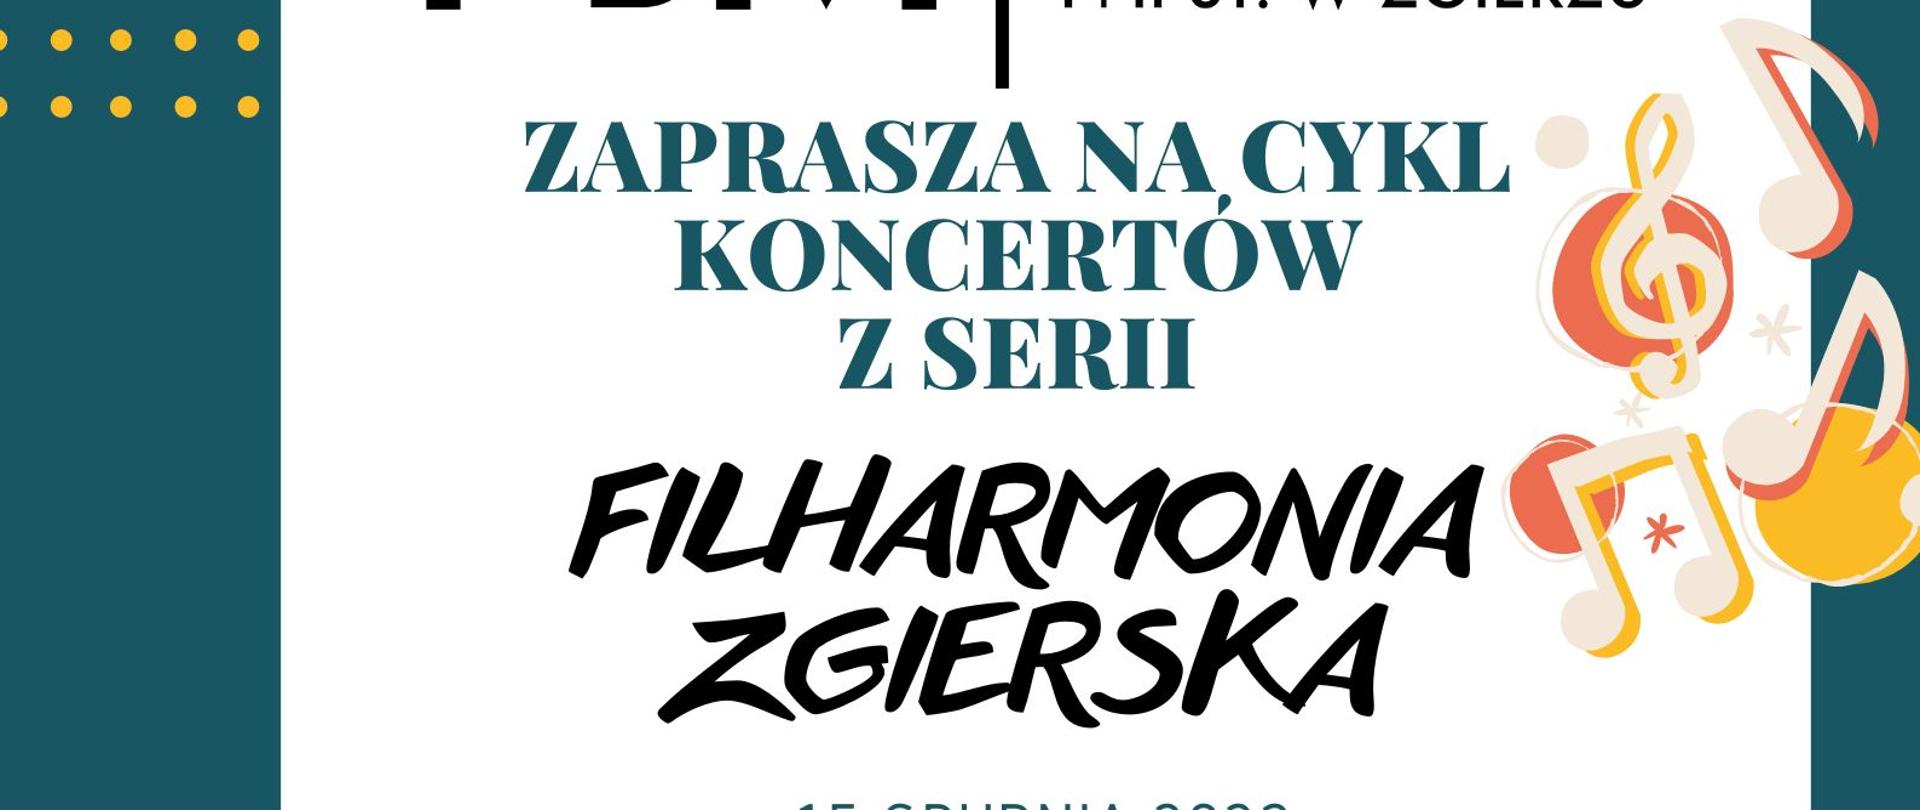 Plakat wydarzenia - Cykl koncertów - Filharmonia Zgierska